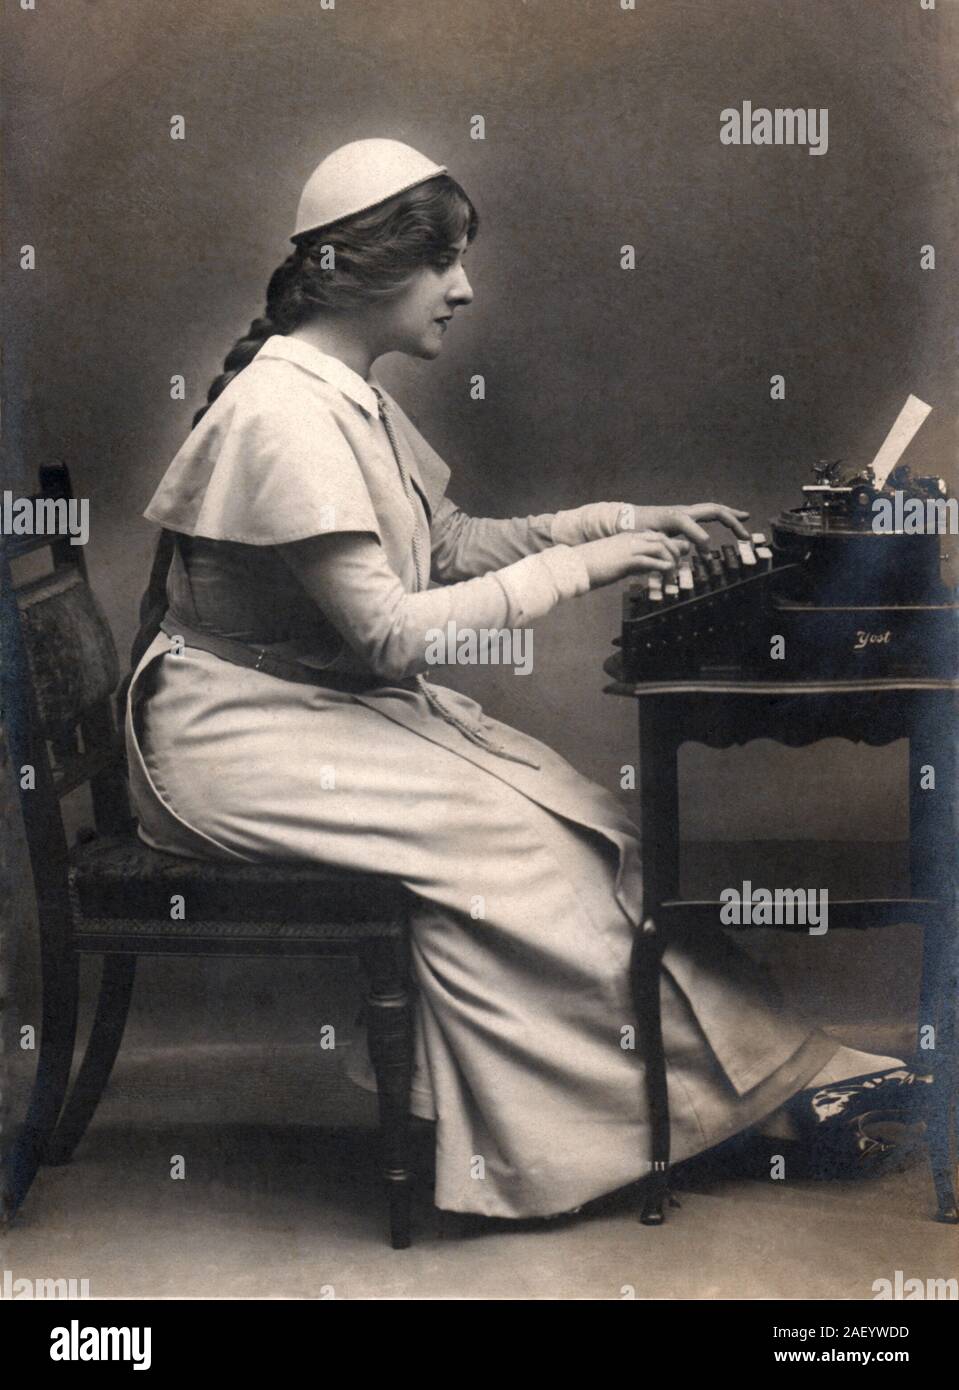 Vers 1907 secrétaire à l'aide d'une machine à écrire Yost à partir de la fin des années 1800, vintage véritable carte postale photographique (CPPR). Banque D'Images